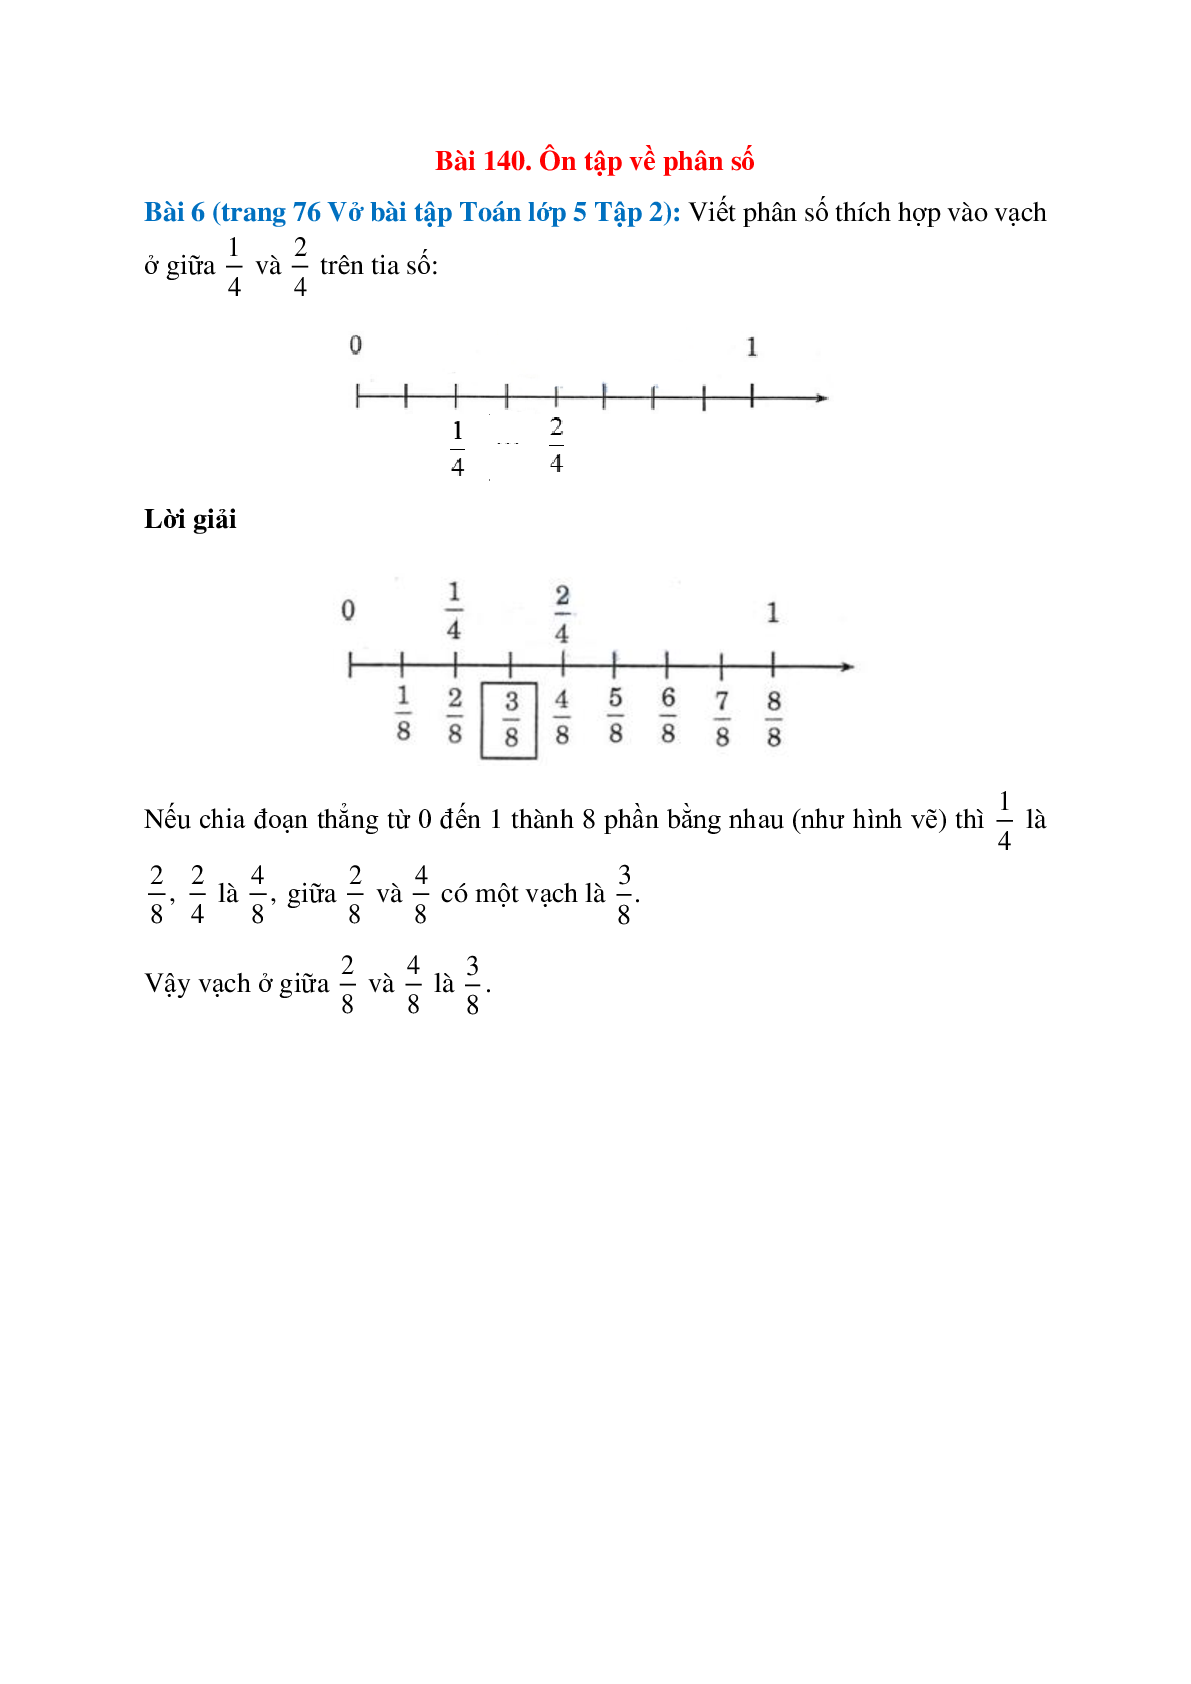 Viết phân số thích hợp vào vạch ở giữa 1/4 và 2/4 trên tia số (trang 1)